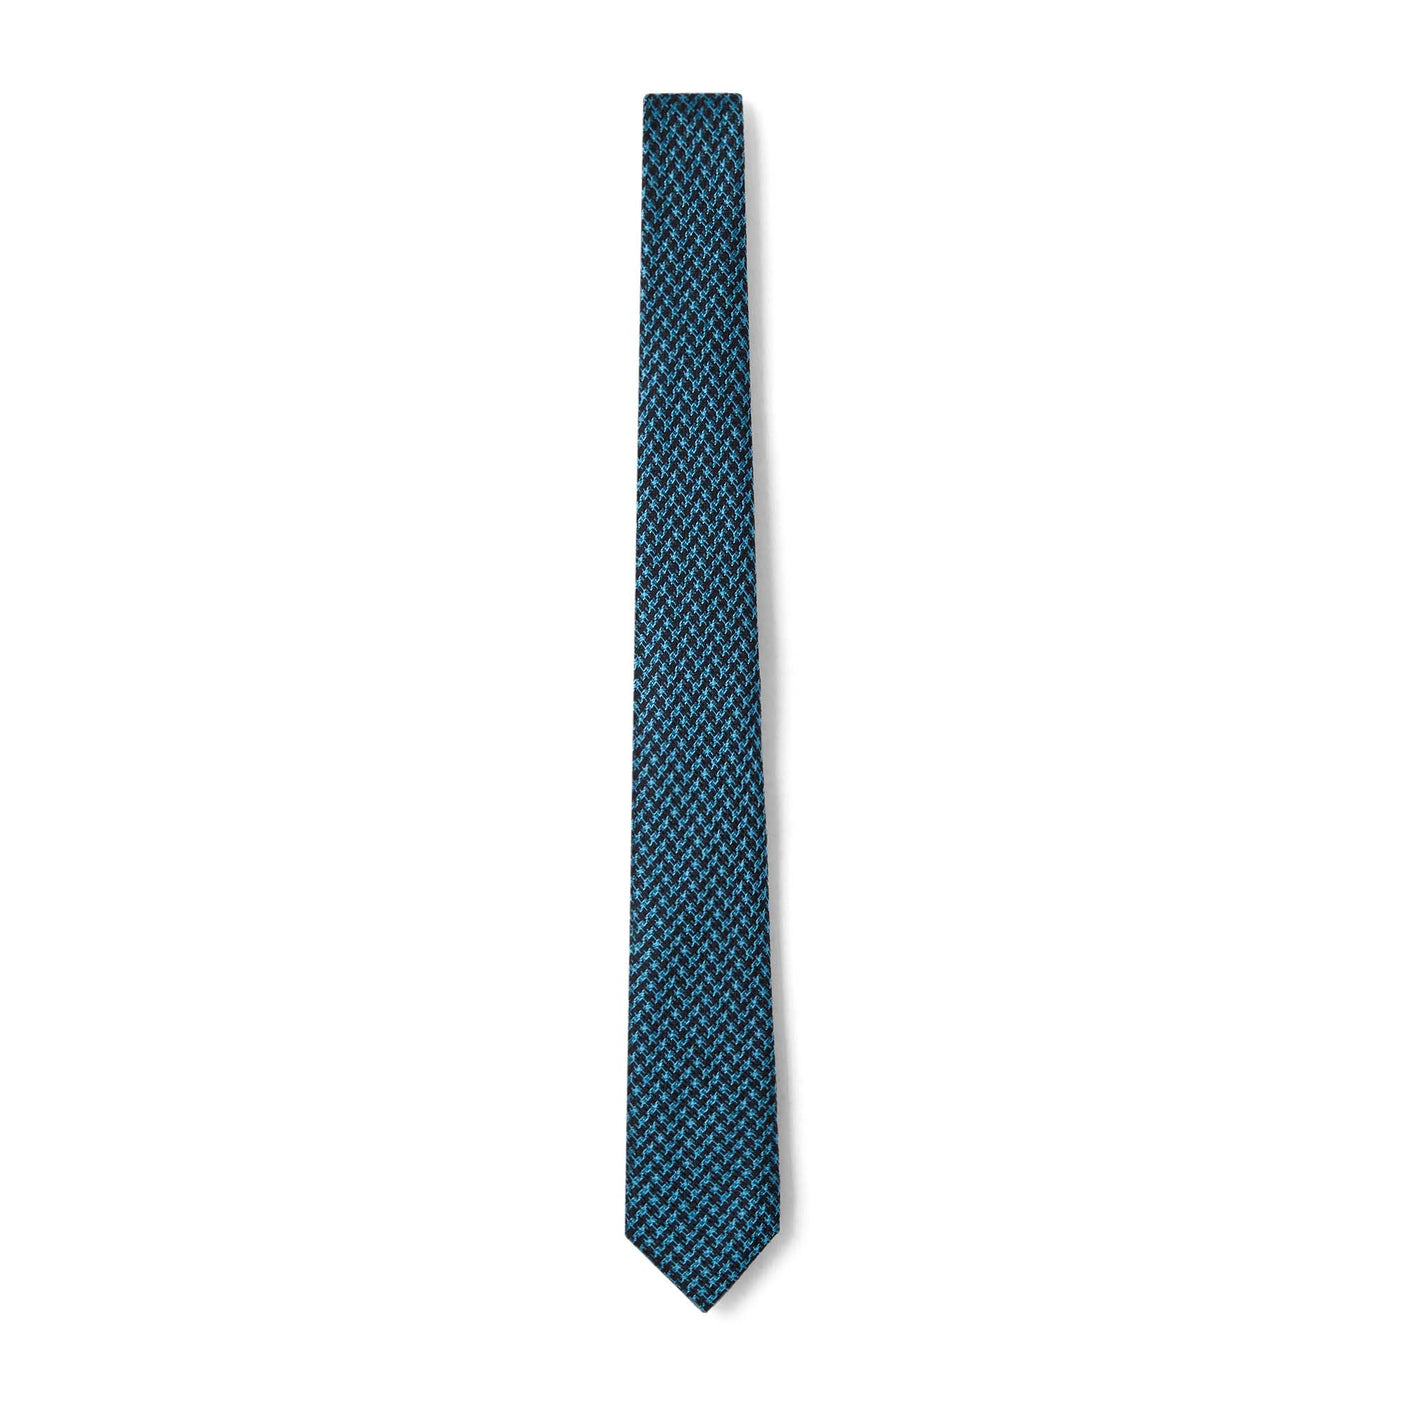 Cravate à motif pied de poule turquoise et noir